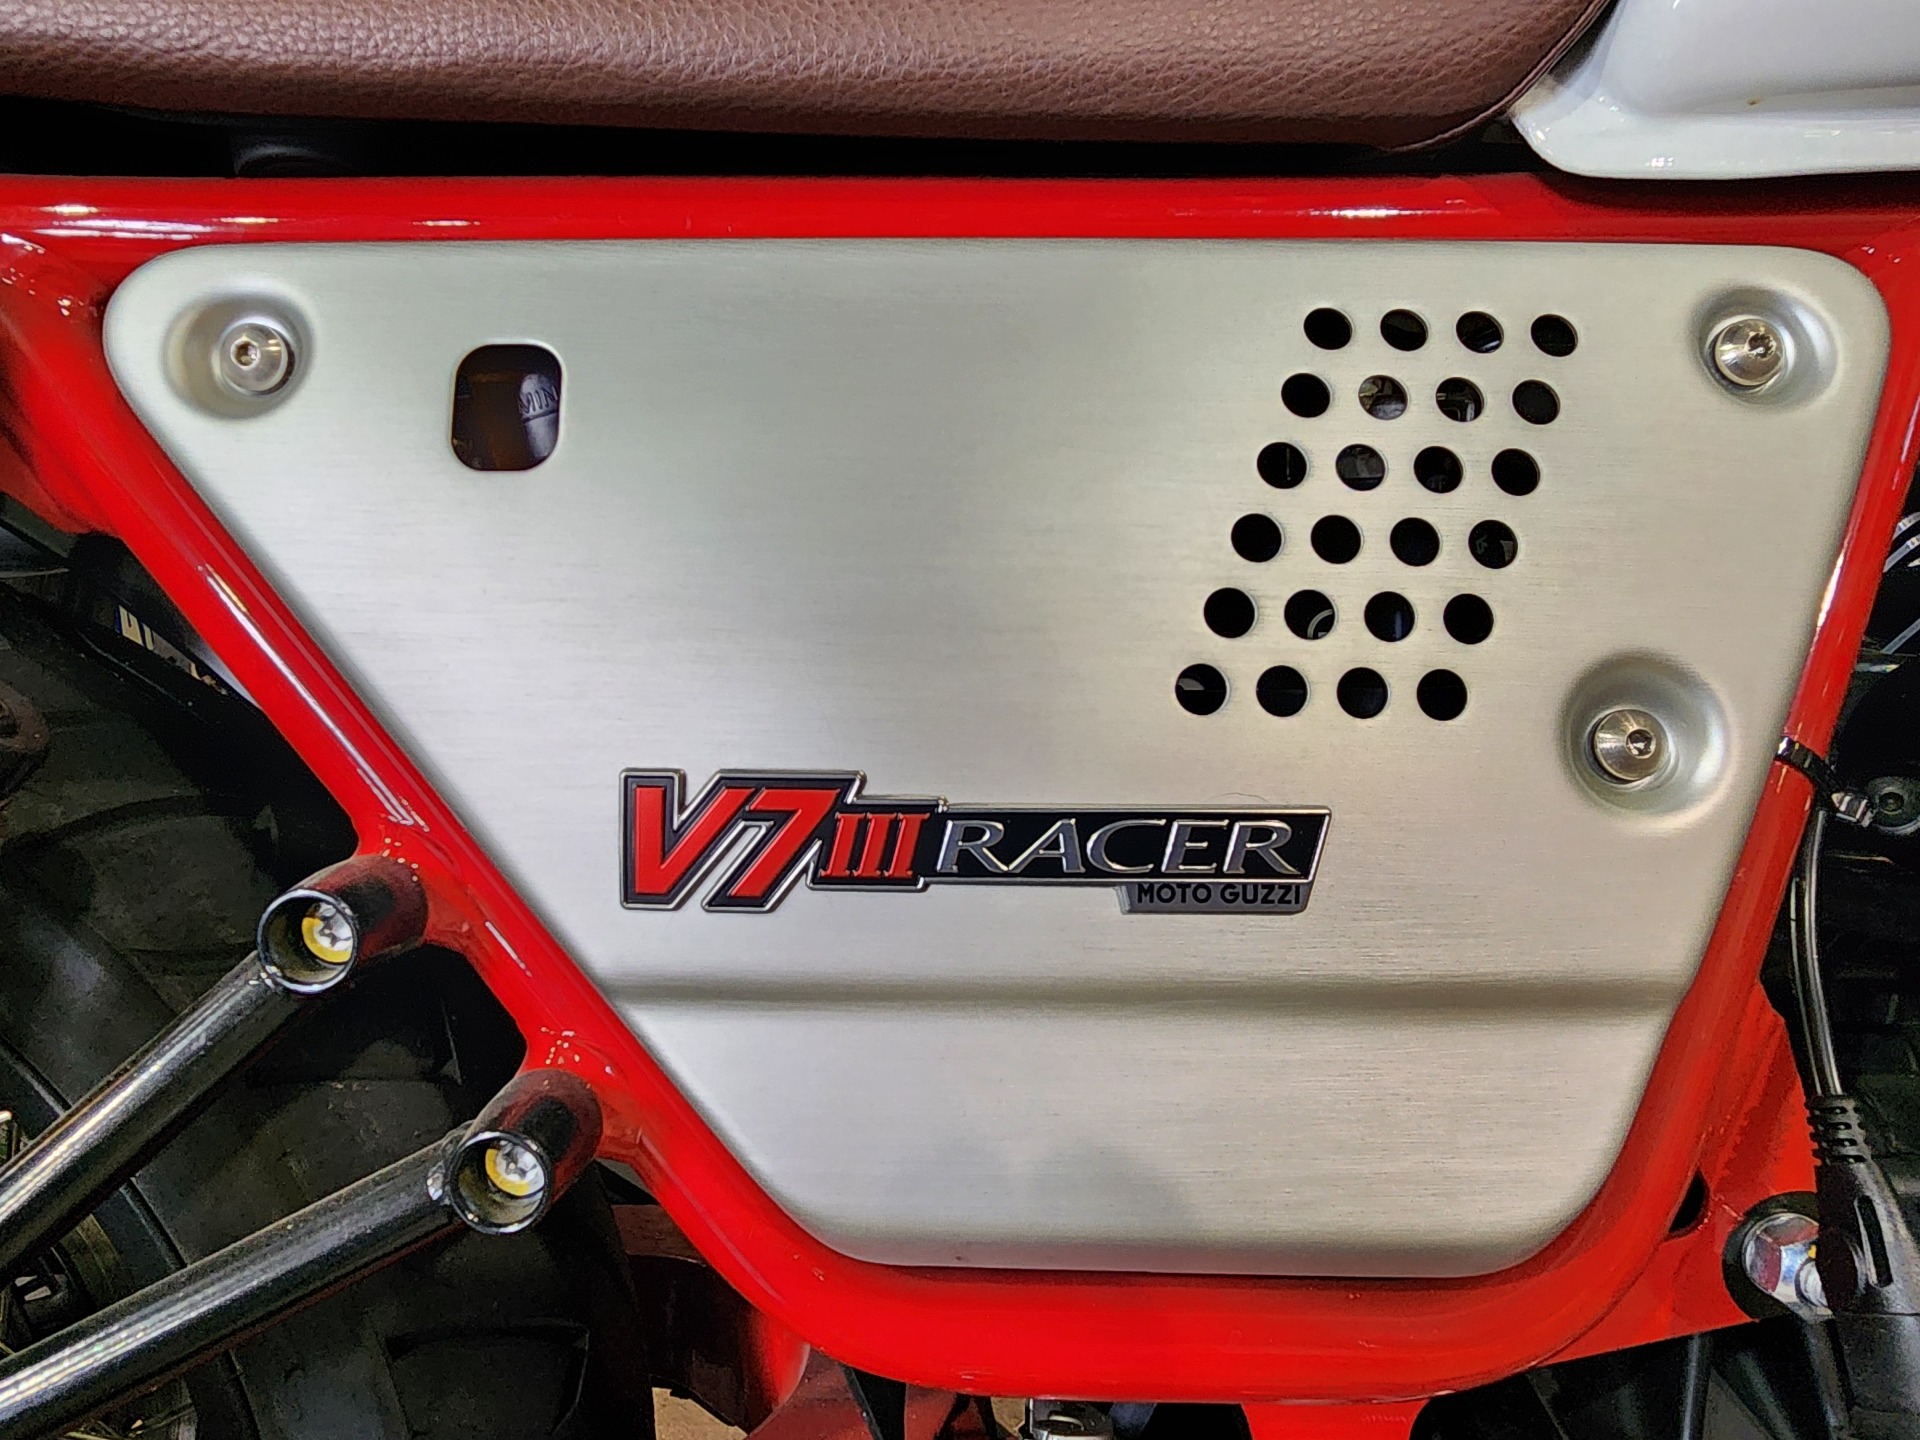 2020 Moto Guzzi V7 111 RACER LE in Denver, Colorado - Photo 7